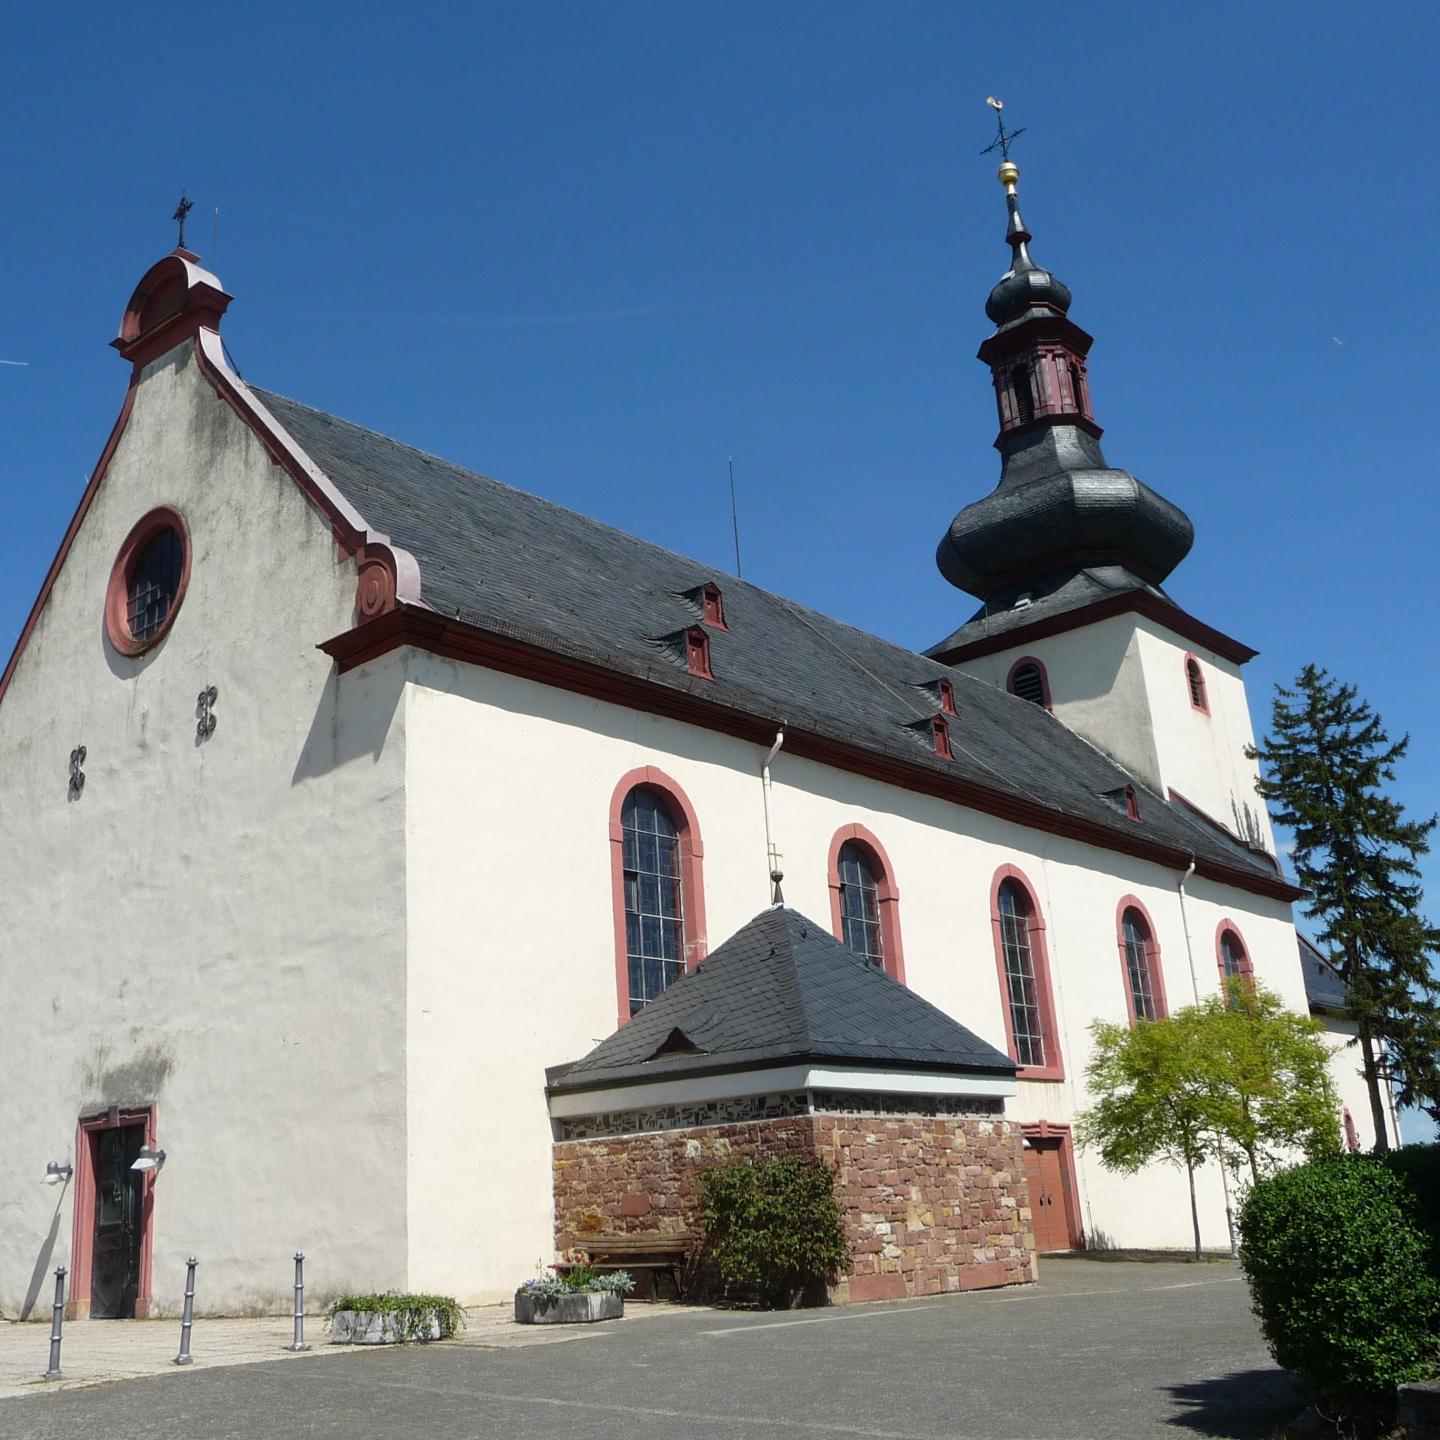 St. Kilian, Nierstein